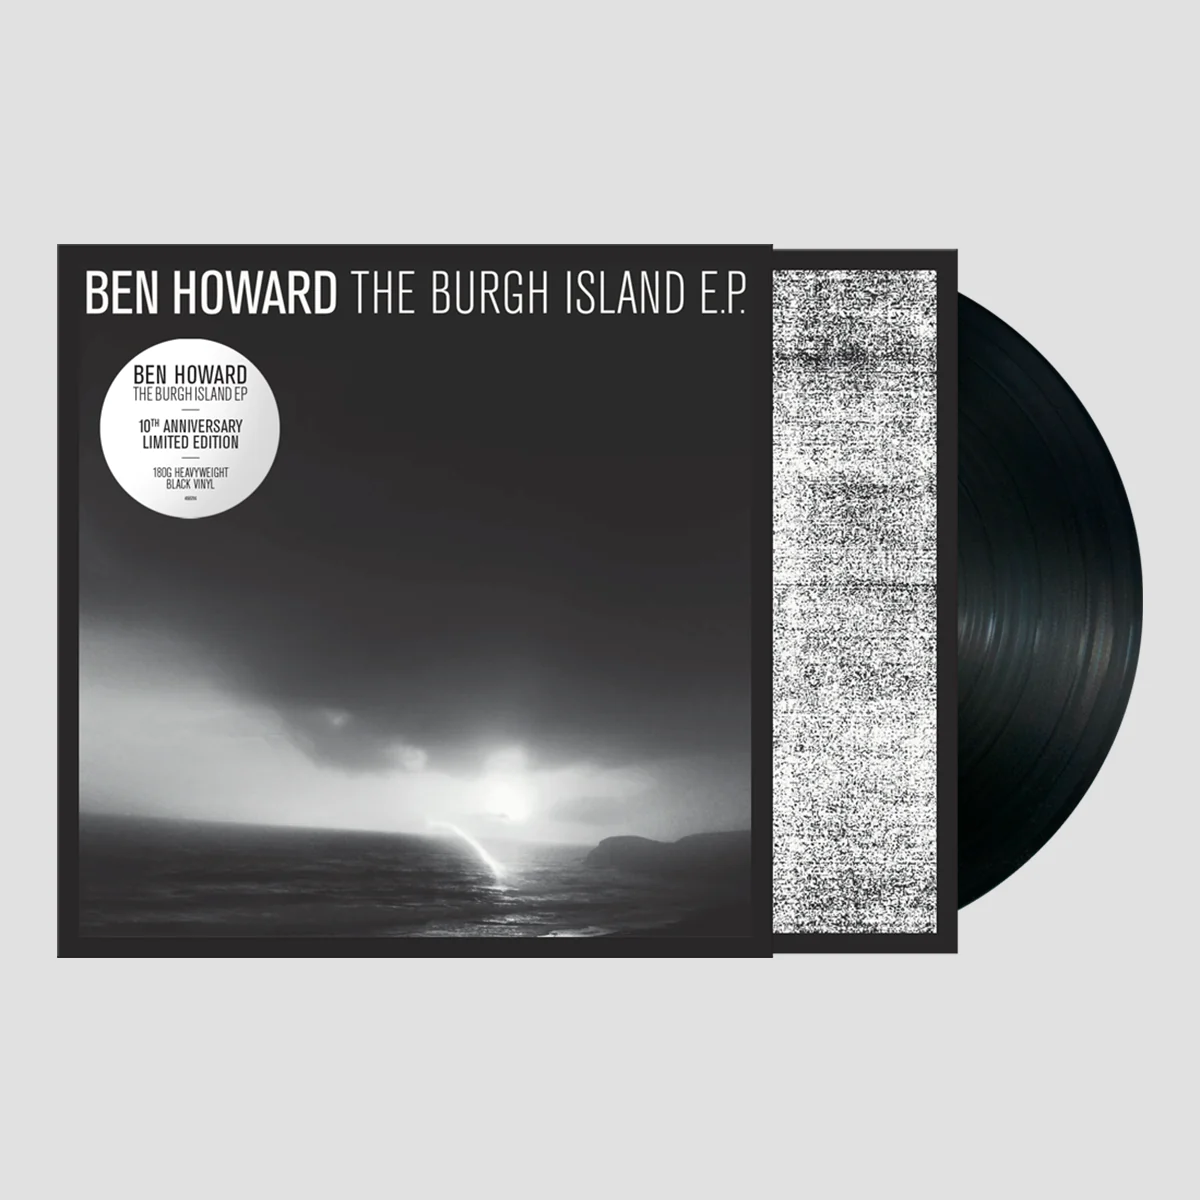 Ben Howard - The Burgh Island E.P.